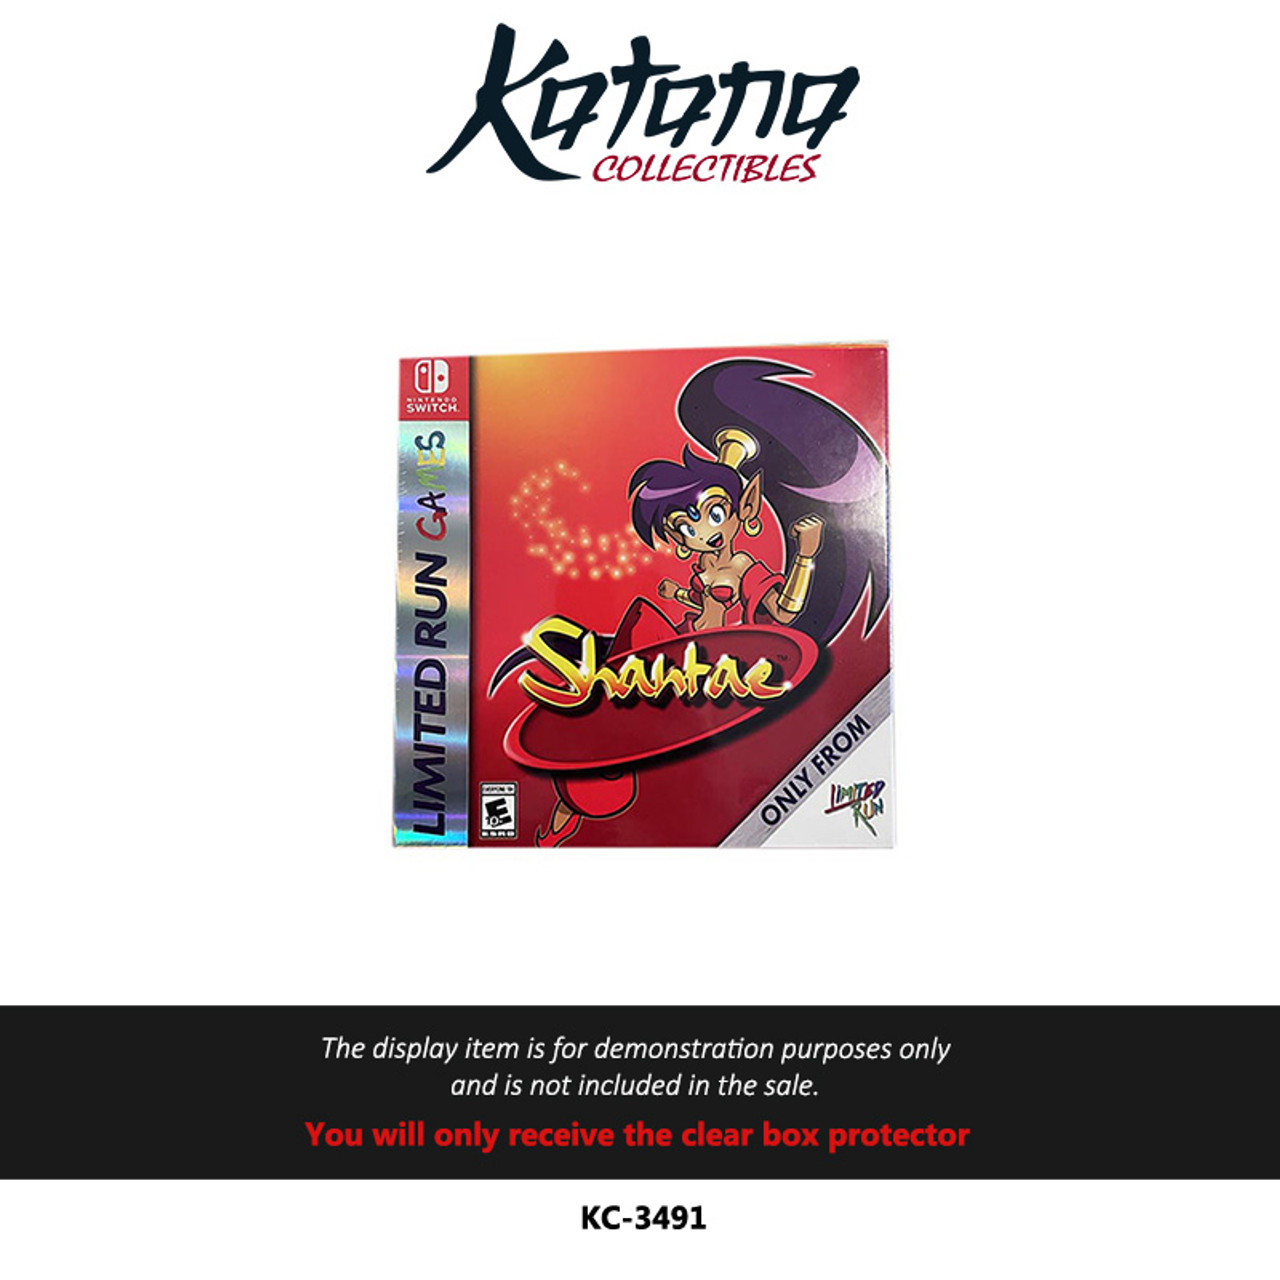 Shantae (GBC) – Limited Run Games